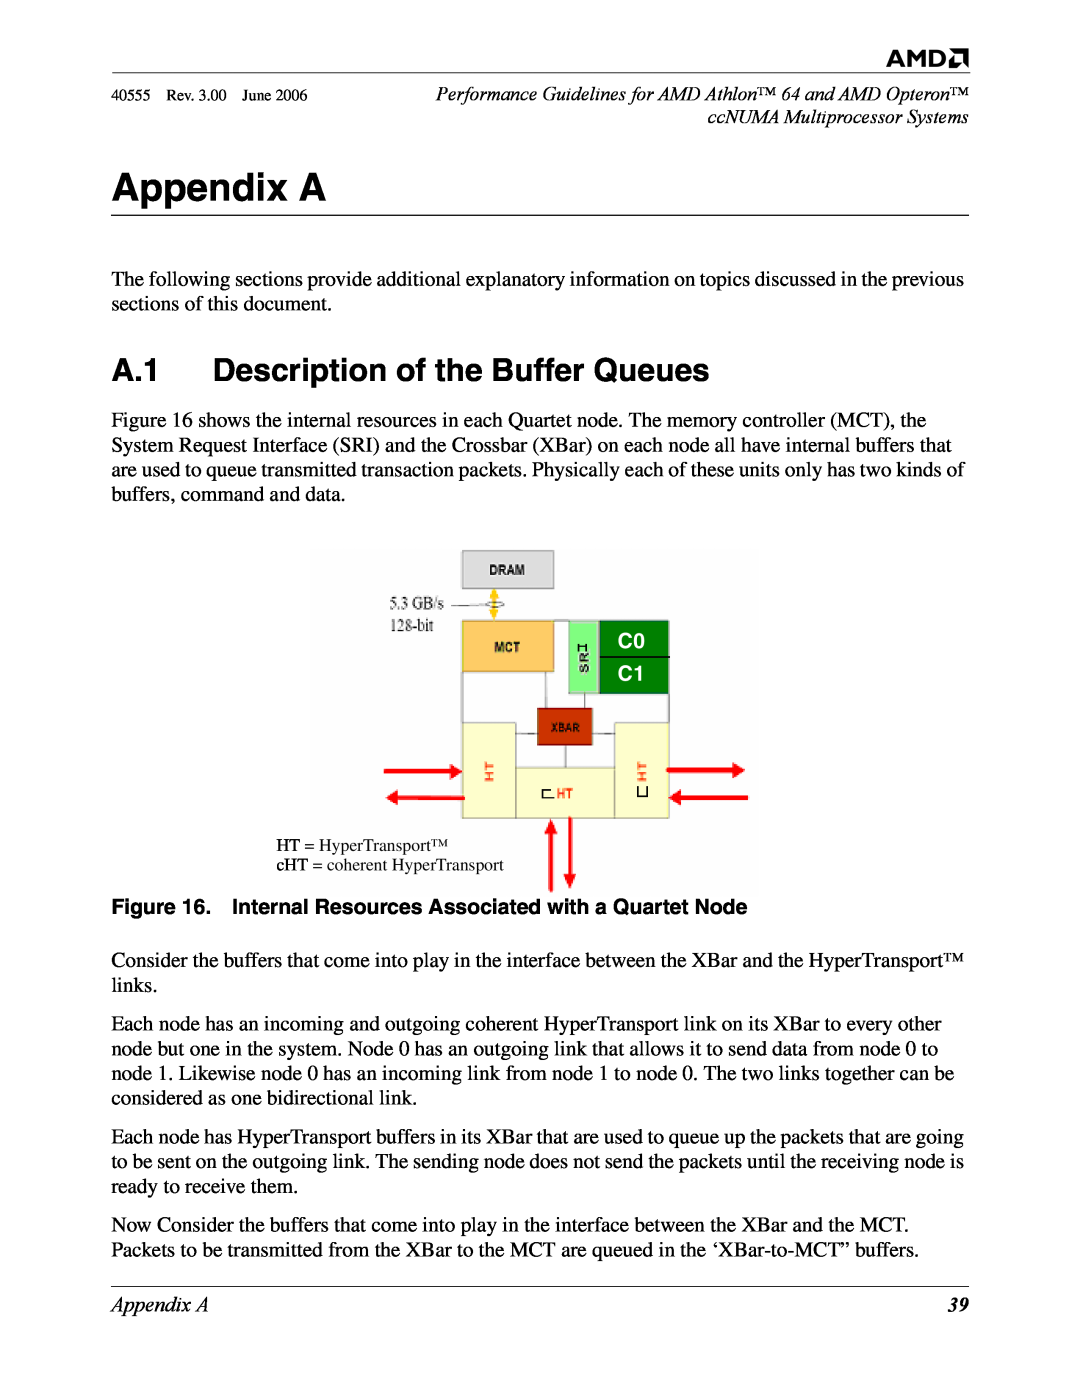 AMD 64 manual Appendix A, A.1 Description of the Buffer Queues, Internal Resources Associated with a Quartet Node, C0 C1 